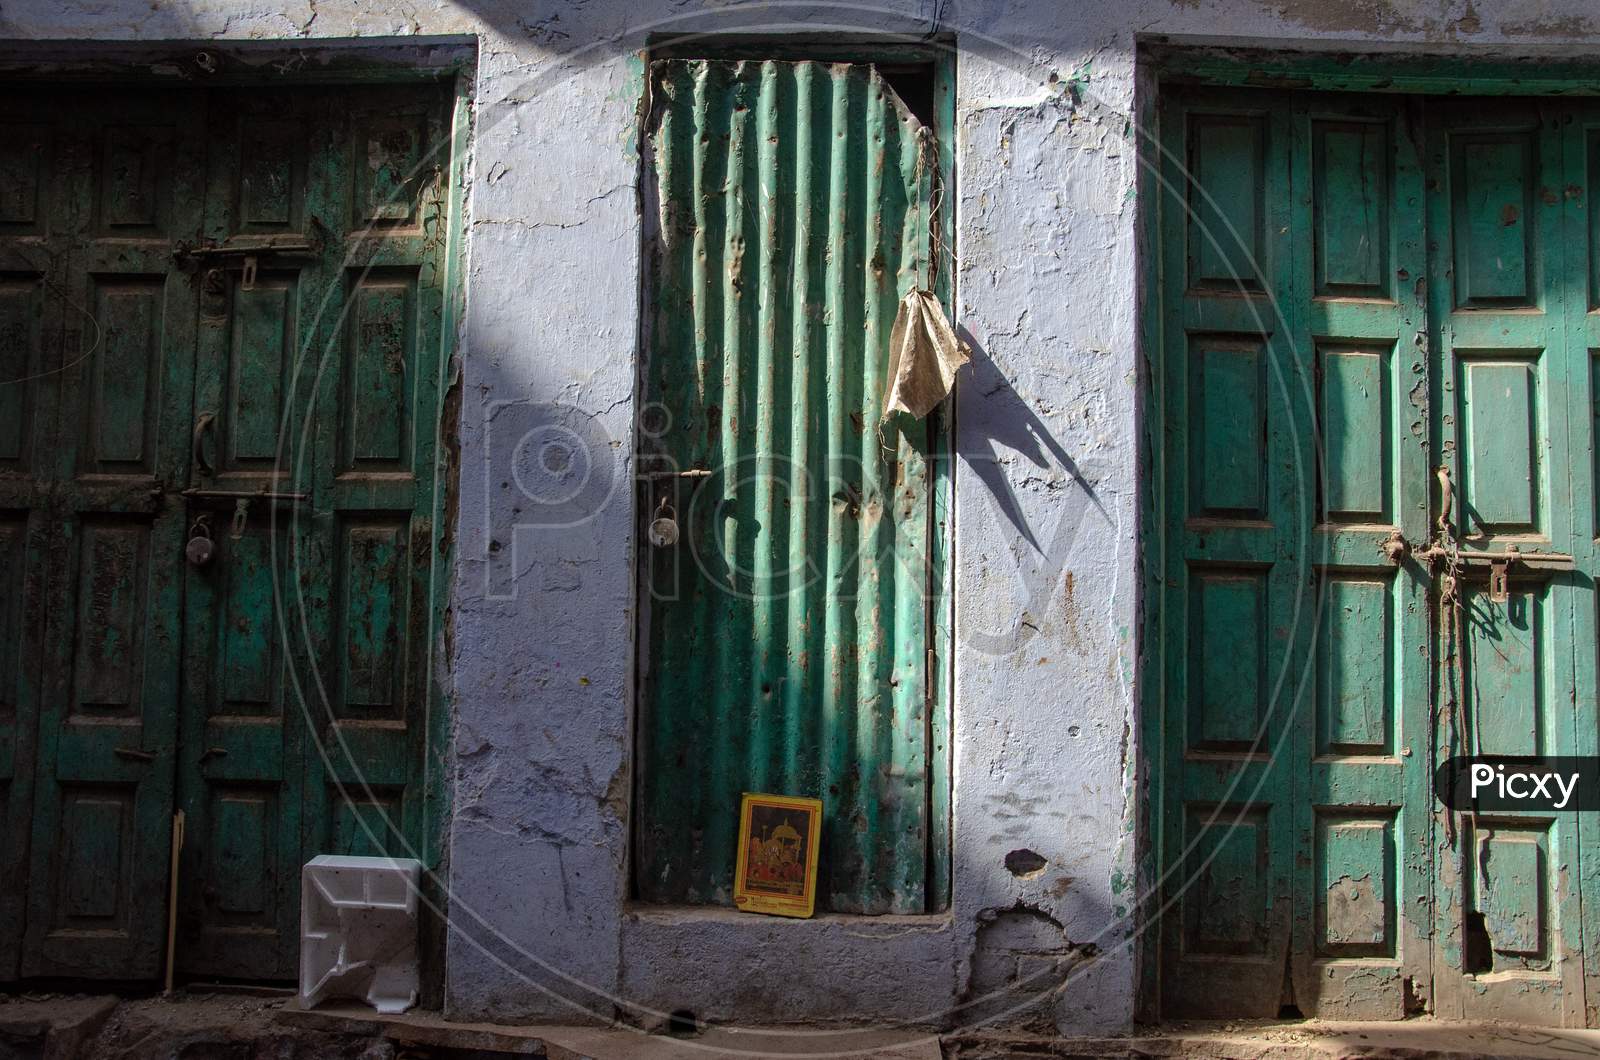 Retro Wooden Doors in the streets of Delhi